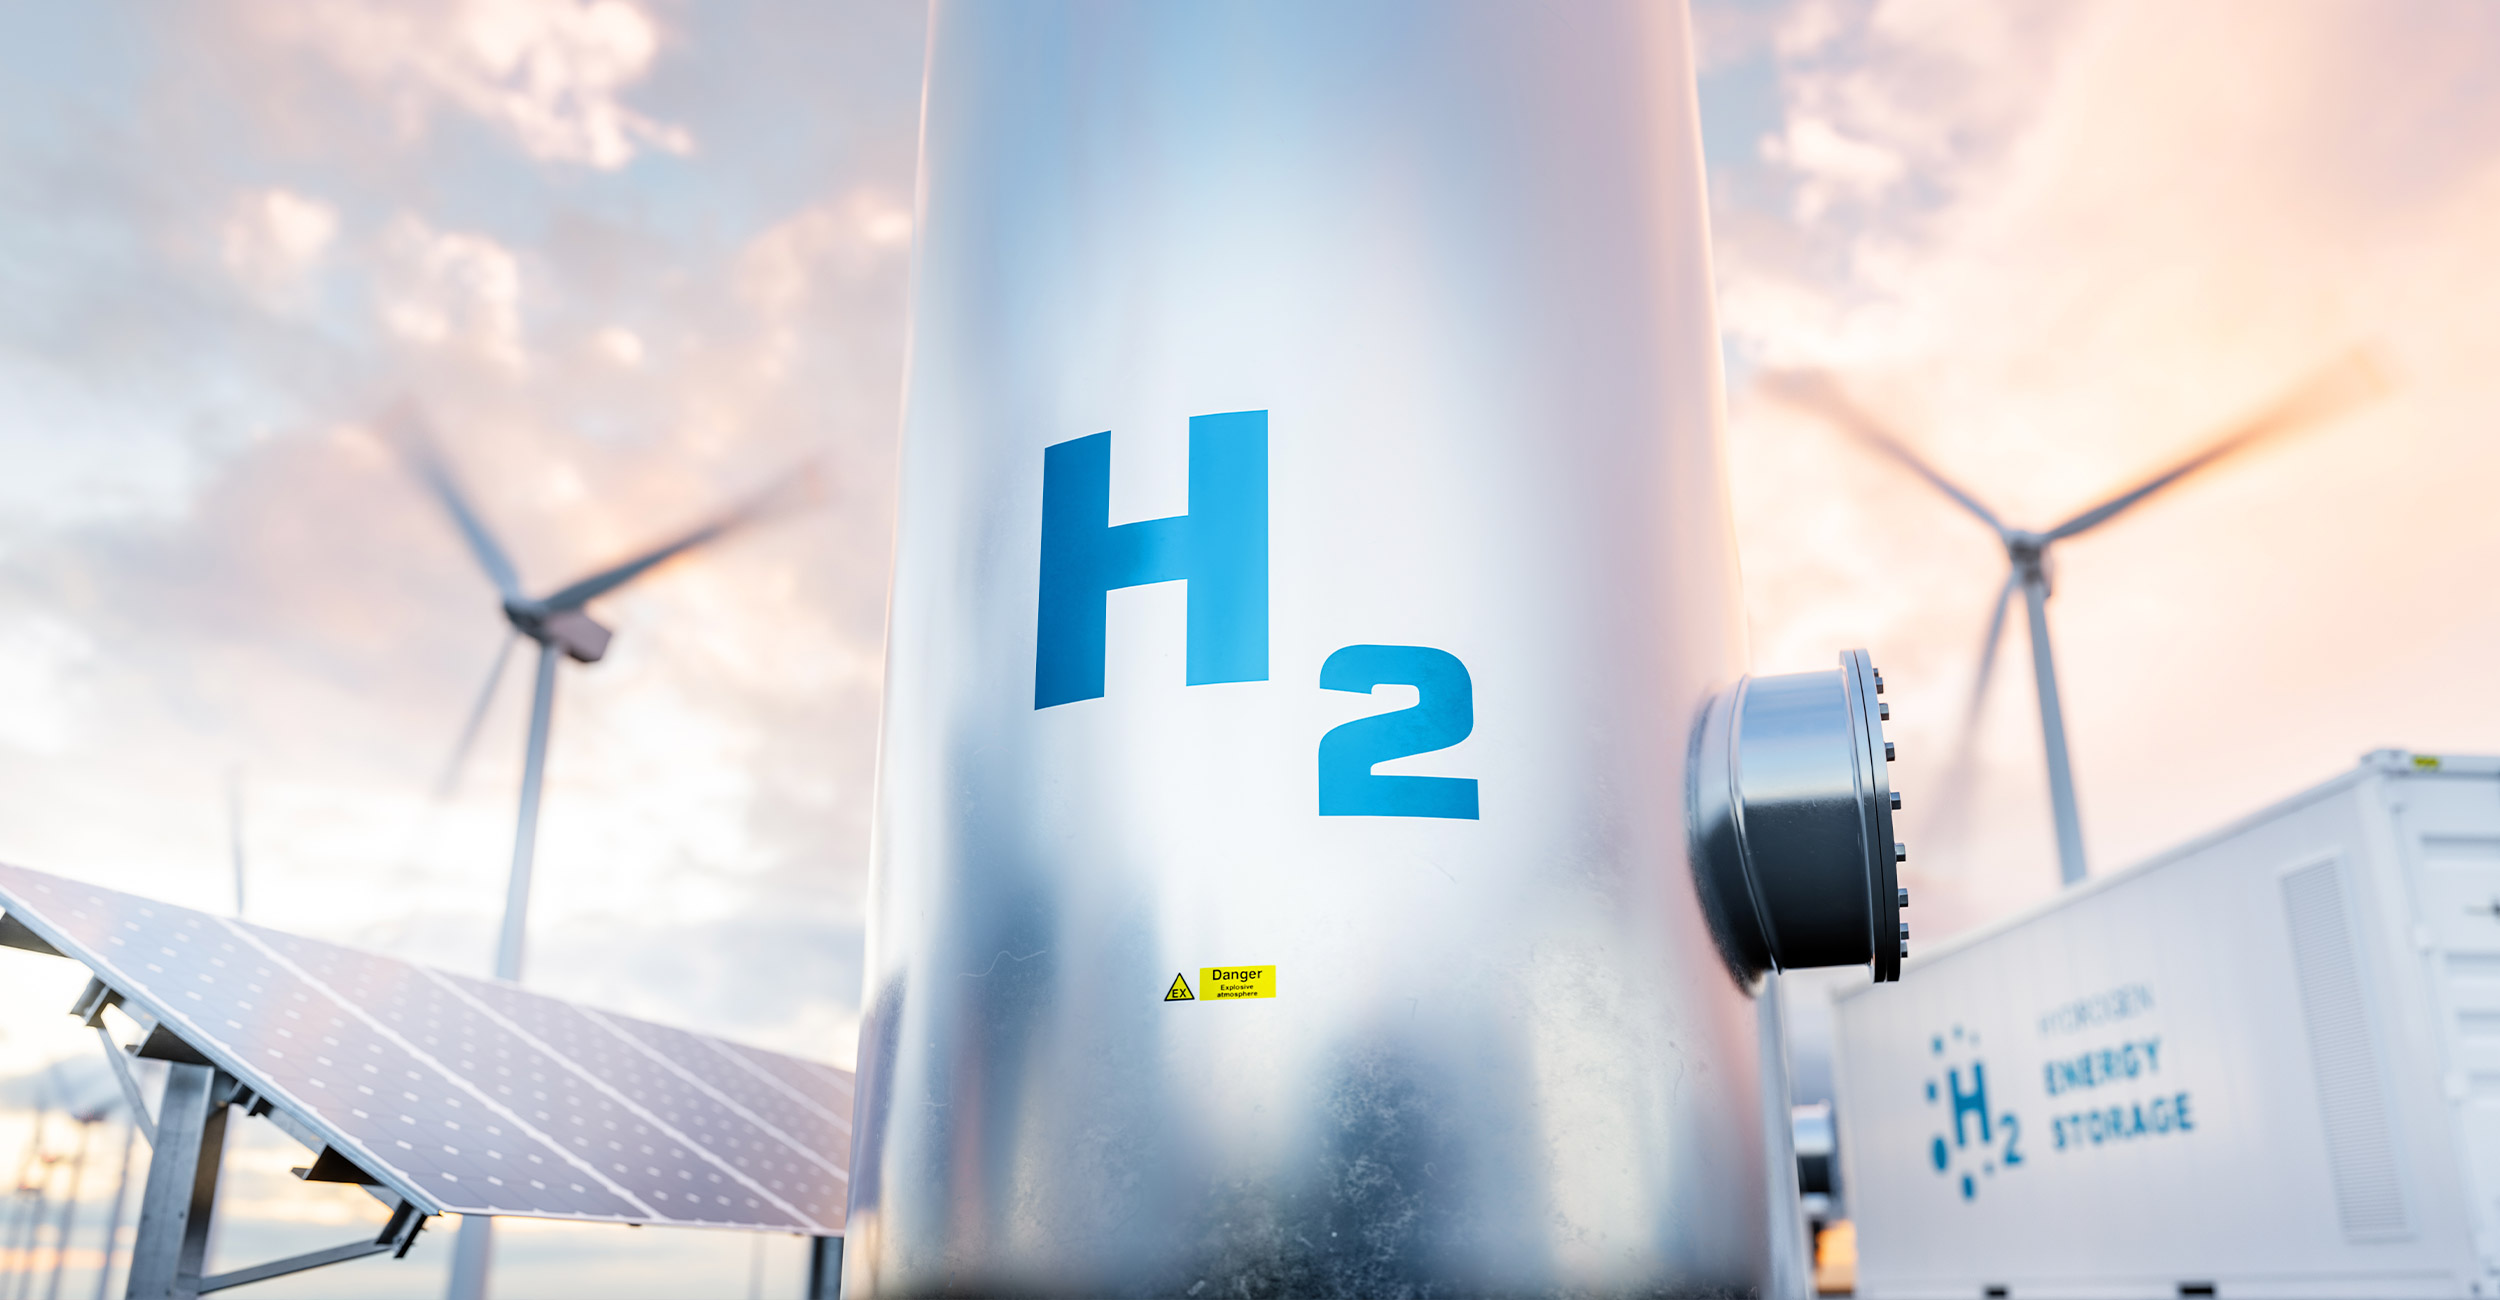 Durchstarten trotz Unsicherheiten: Eckpunkte einer anpassungsfähigen Wasserstoffstrategie. Wie die Politik Wasserstoffpfade hin zur Klimaneutralität 2045 finden kann.